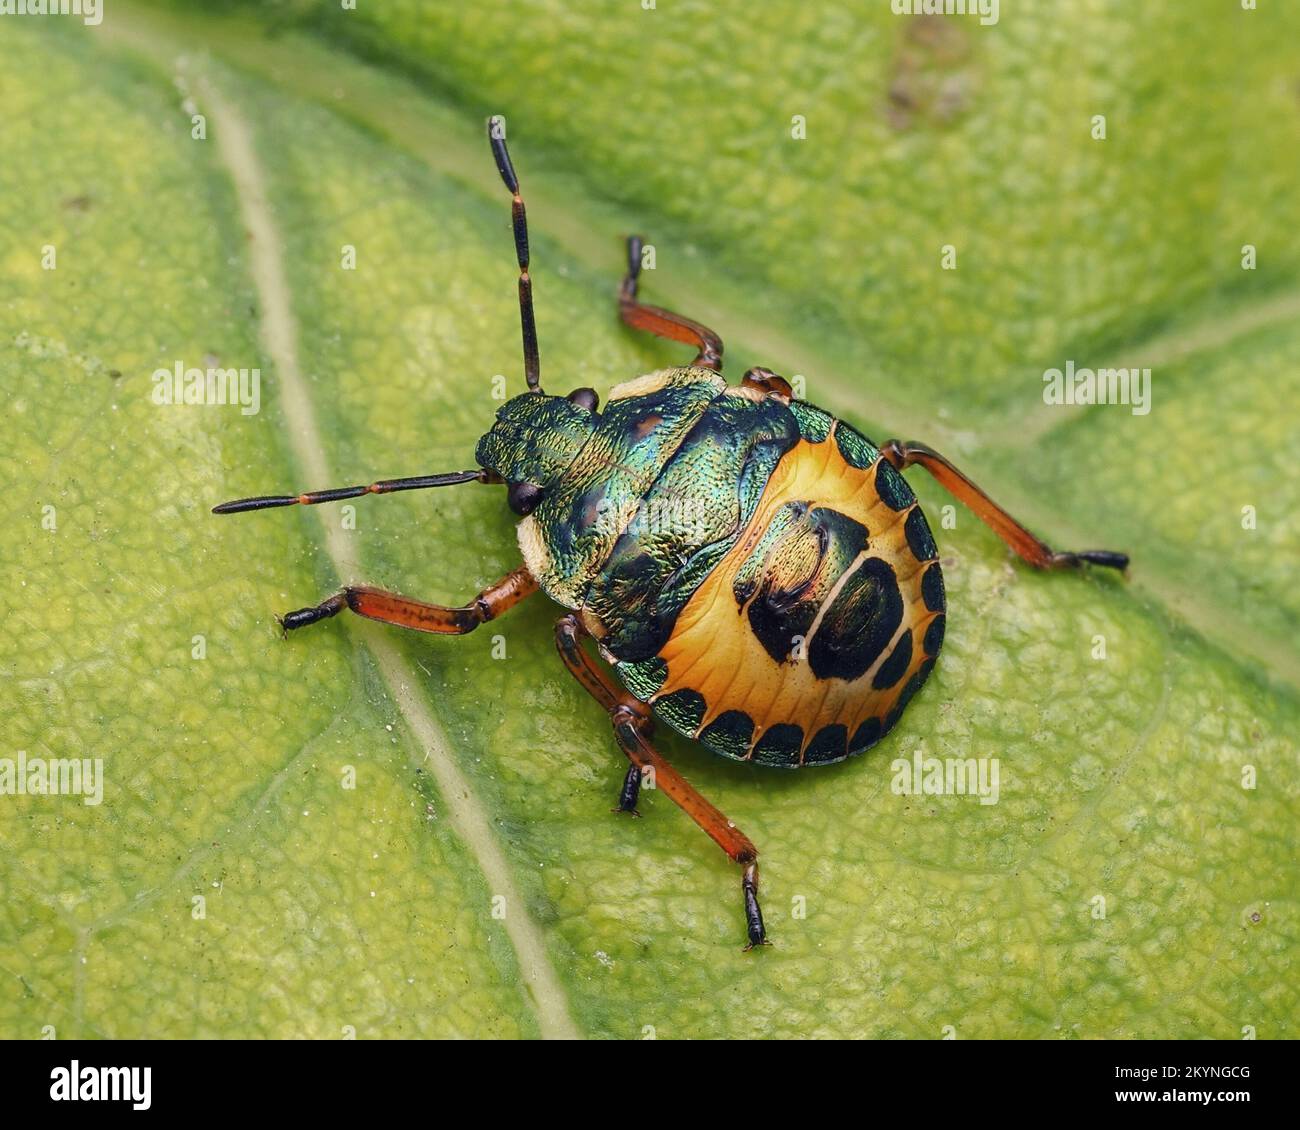 Bronzeschildbug Nymphe (Troilus luridus) in Ruhe auf dem Blatt. Tipperary, Irland Stockfoto